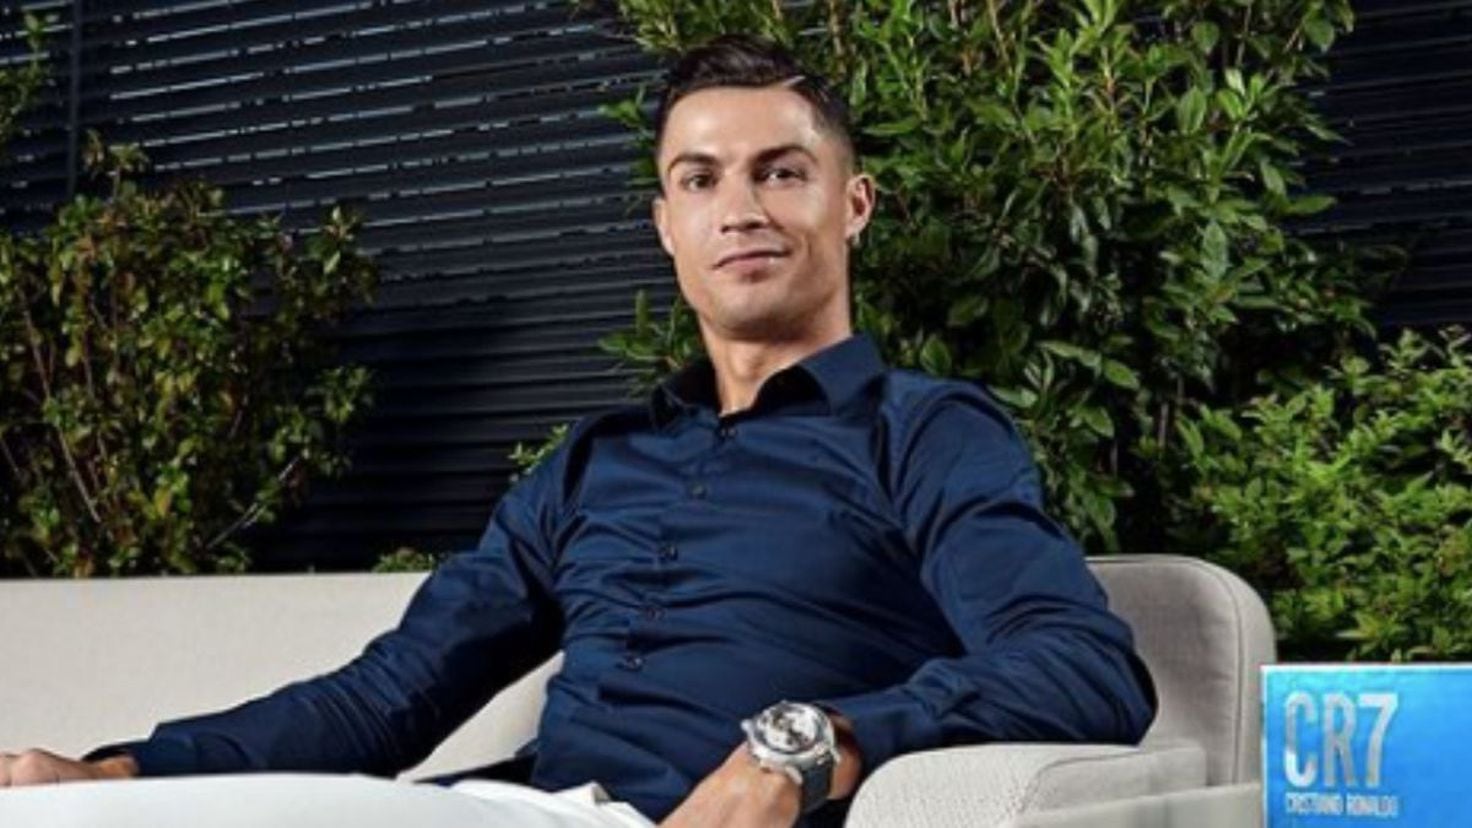 Empresa estrela de Cristiano Ronaldo vai começar a pagar impostos em Portugal